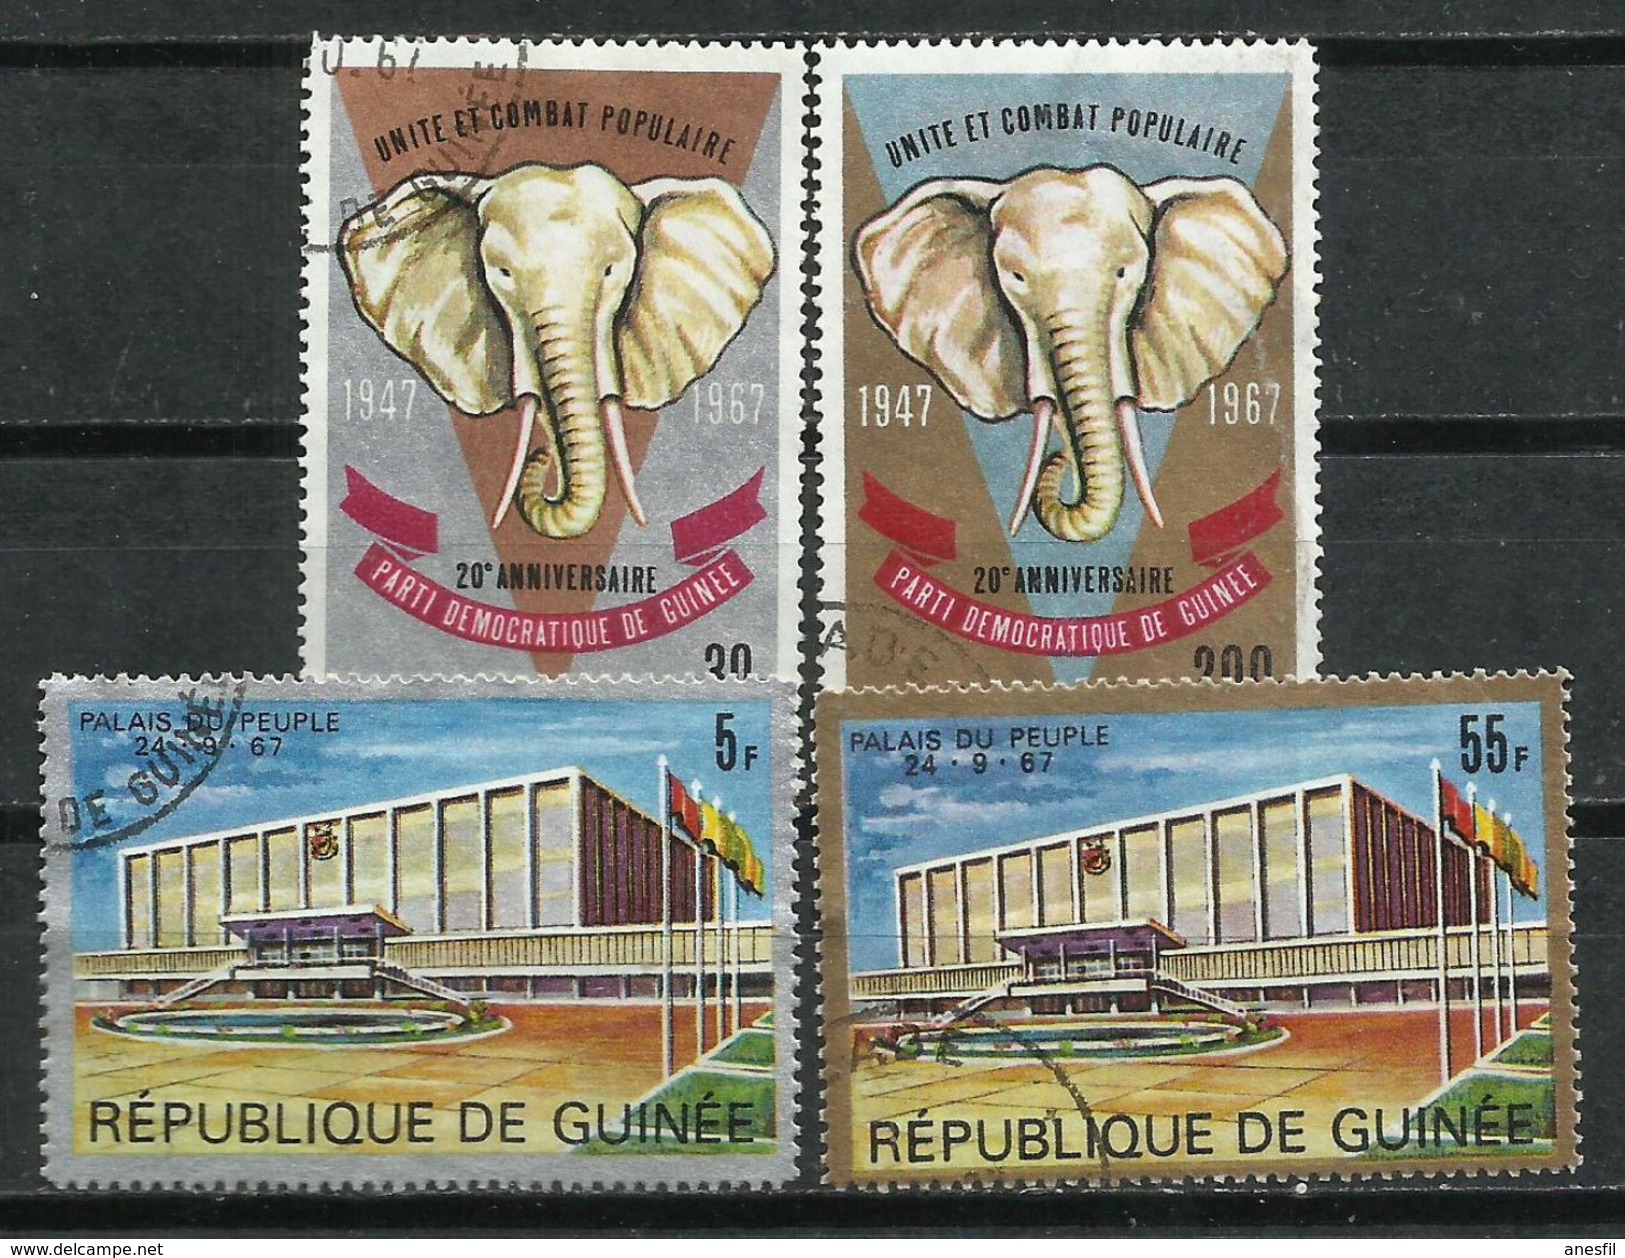 República De Guinea. 1967. Unidad Del Congreso Popular. - Elefantes